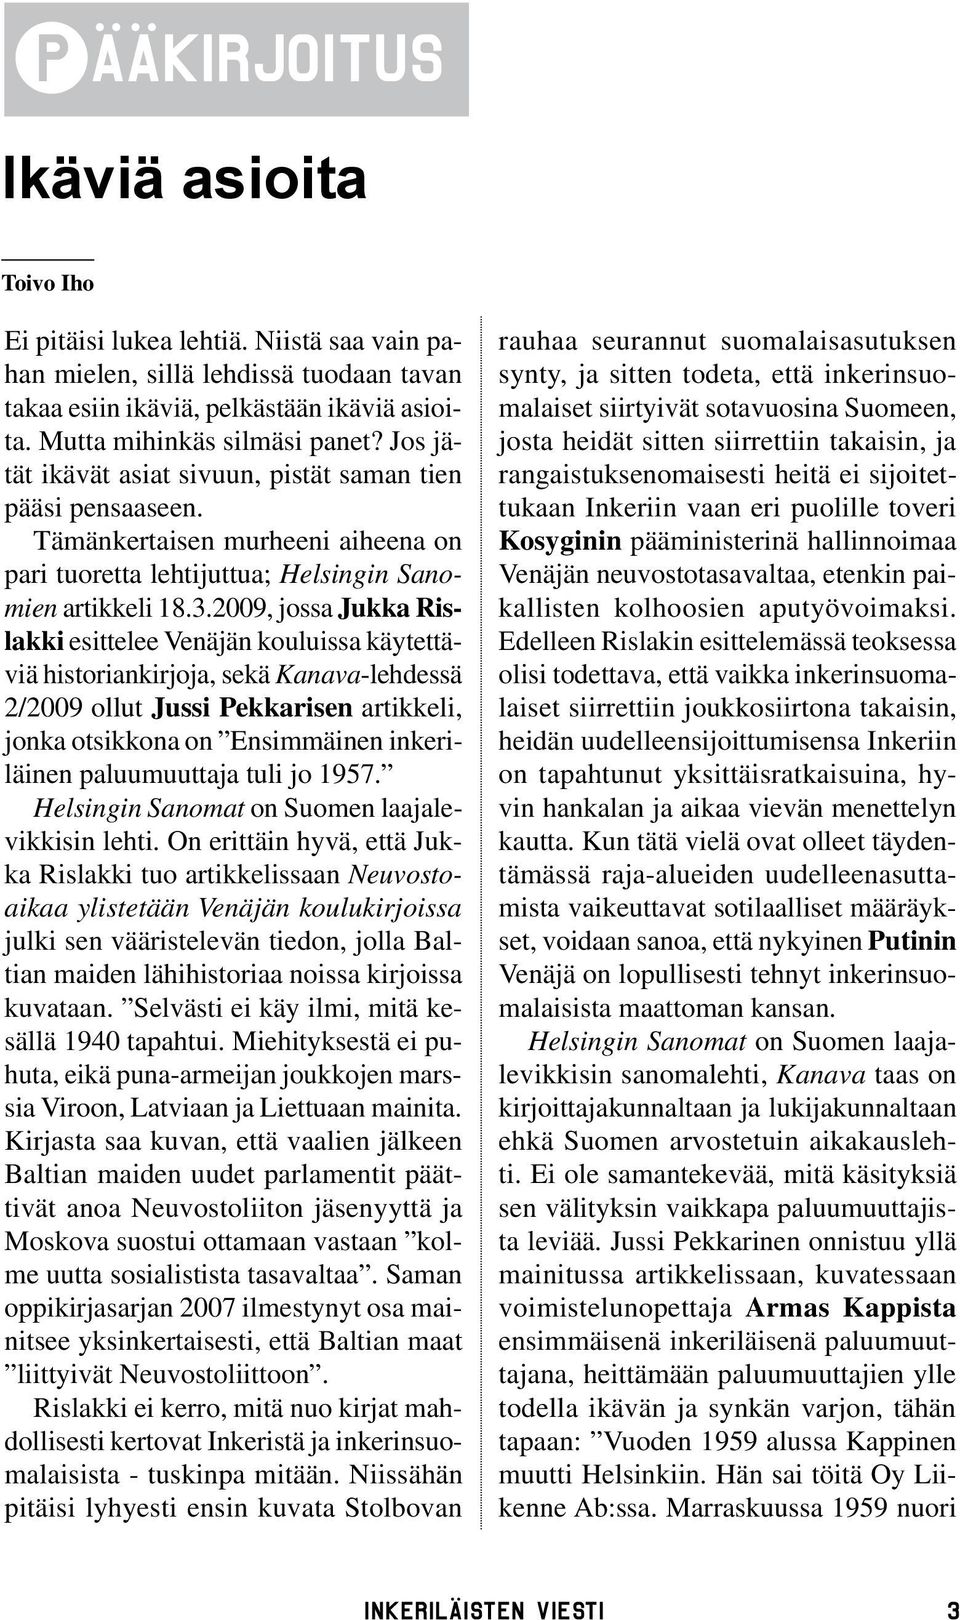 2009, jossa Jukka Rislakki esittelee Venäjän kouluissa käytettäviä historiankirjoja, sekä Kanava-lehdessä 2/2009 ollut Jussi Pekkarisen artikkeli, jonka otsikkona on Ensimmäinen inkeriläinen